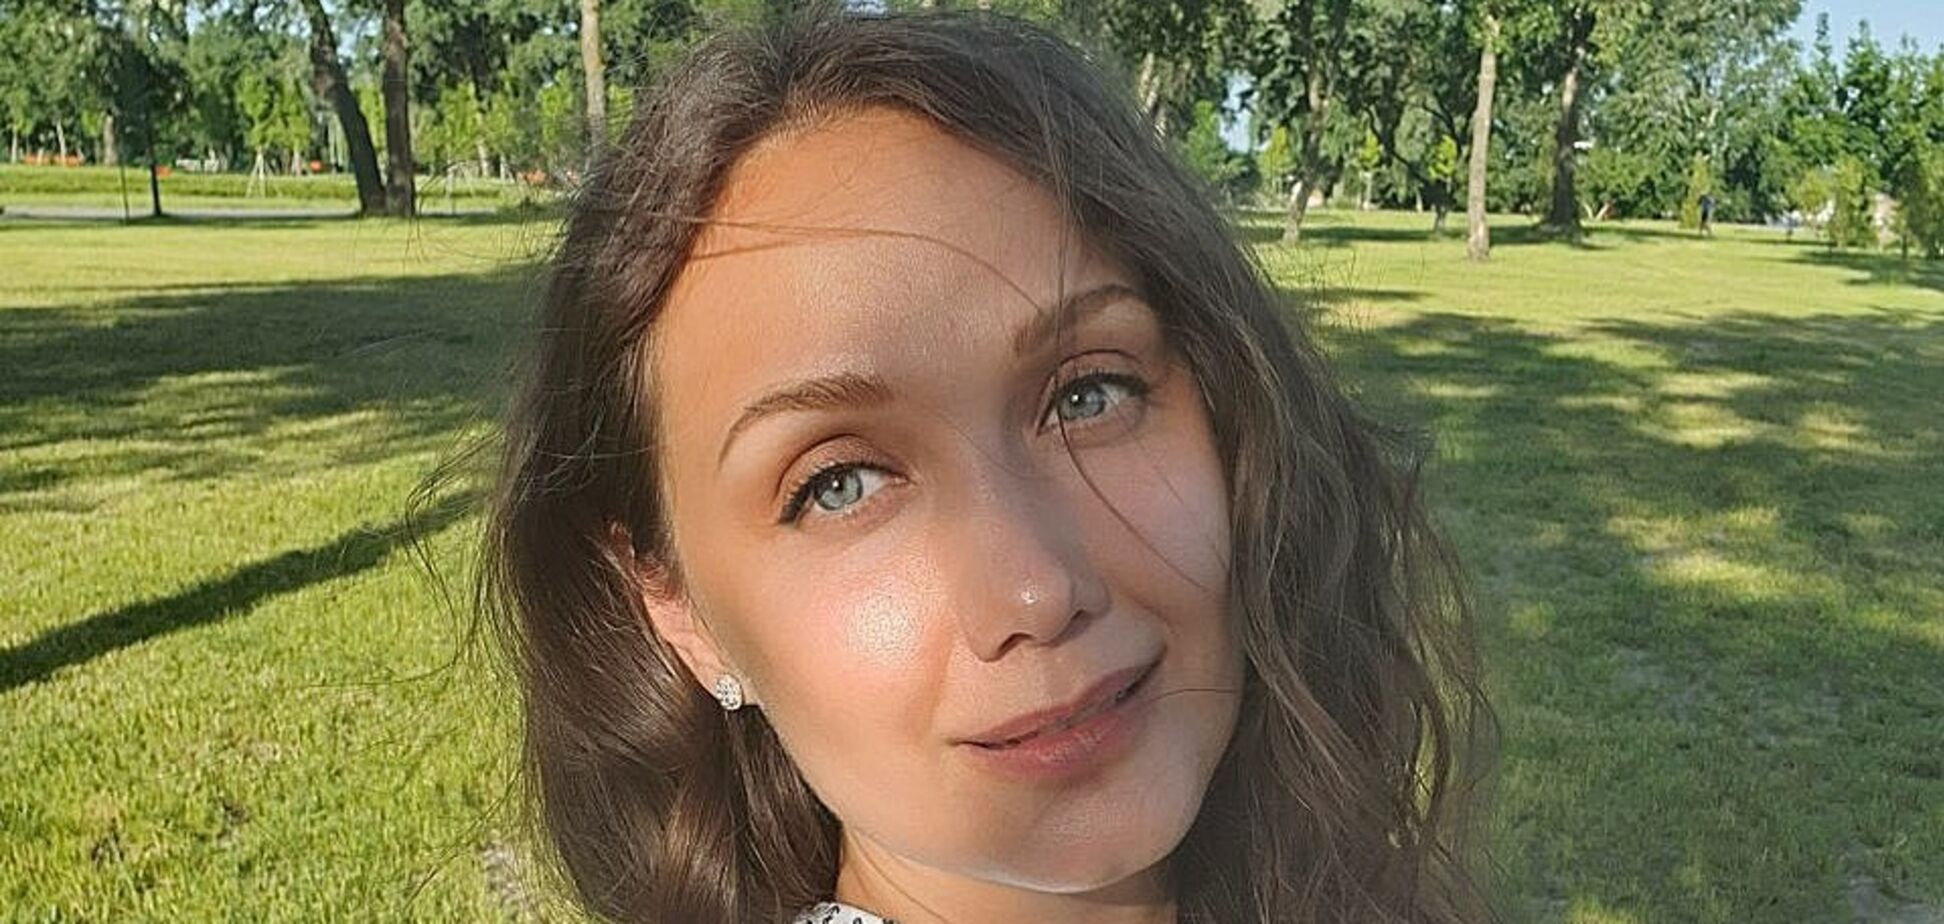 Євгенія Власова повертається на екрани: співачка стала учасницею шоу 'Танці з зірками'